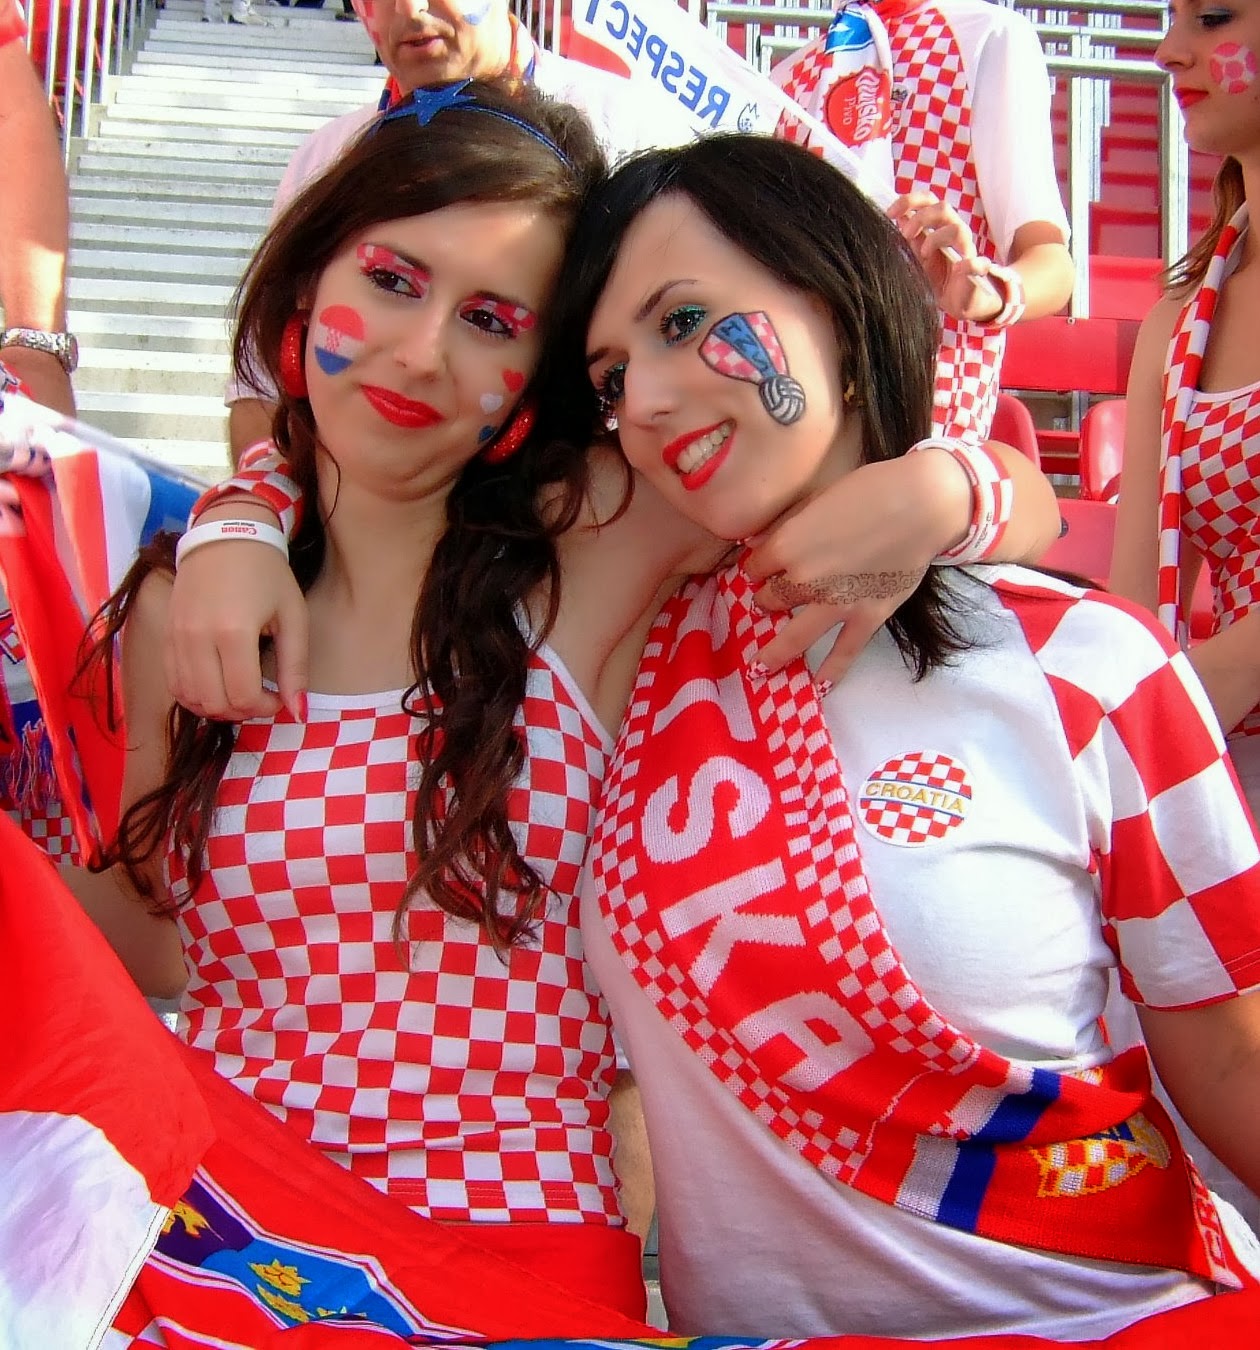 Croatian+Girls+14.jpg